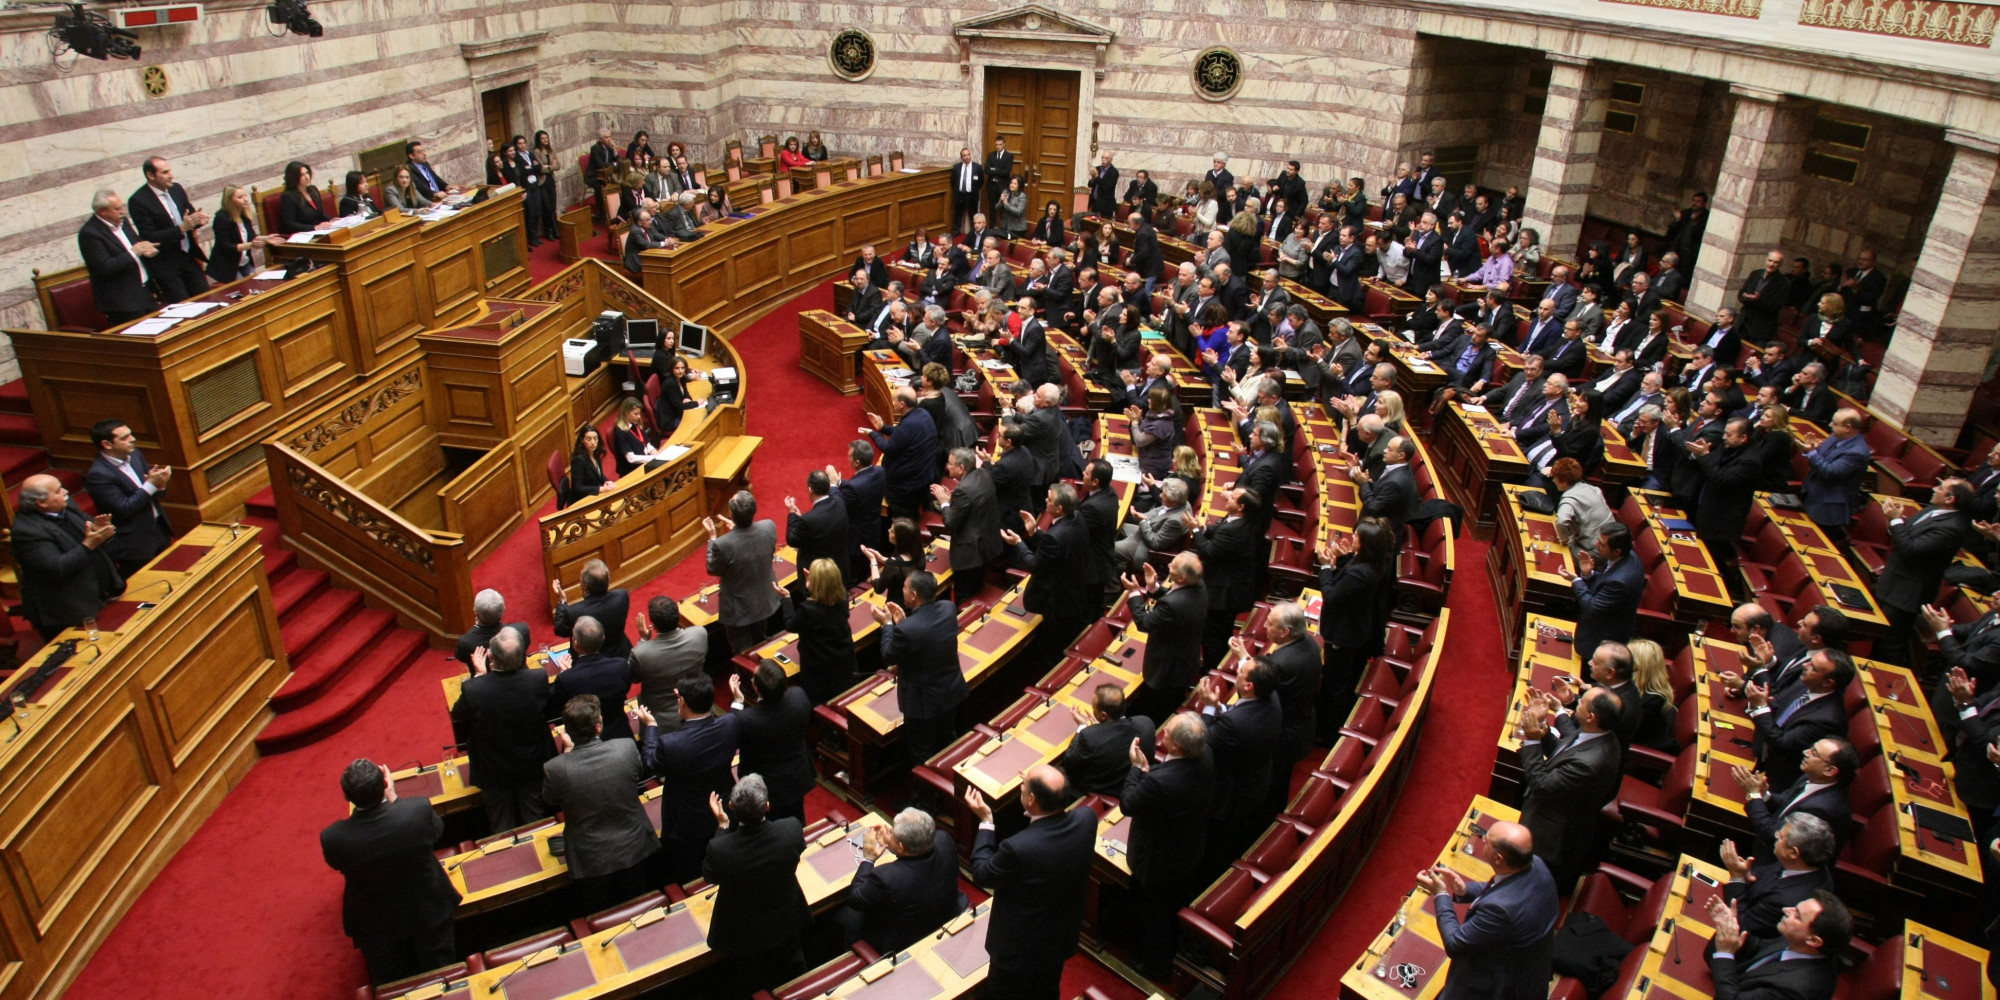 Πρόταση ΣΥΡΙΖΑ για εκλογή Προέδρου: Προβλέπει εννέα ψηφοφορίες στη Βουλή και μετά προσφυγή στον λαό